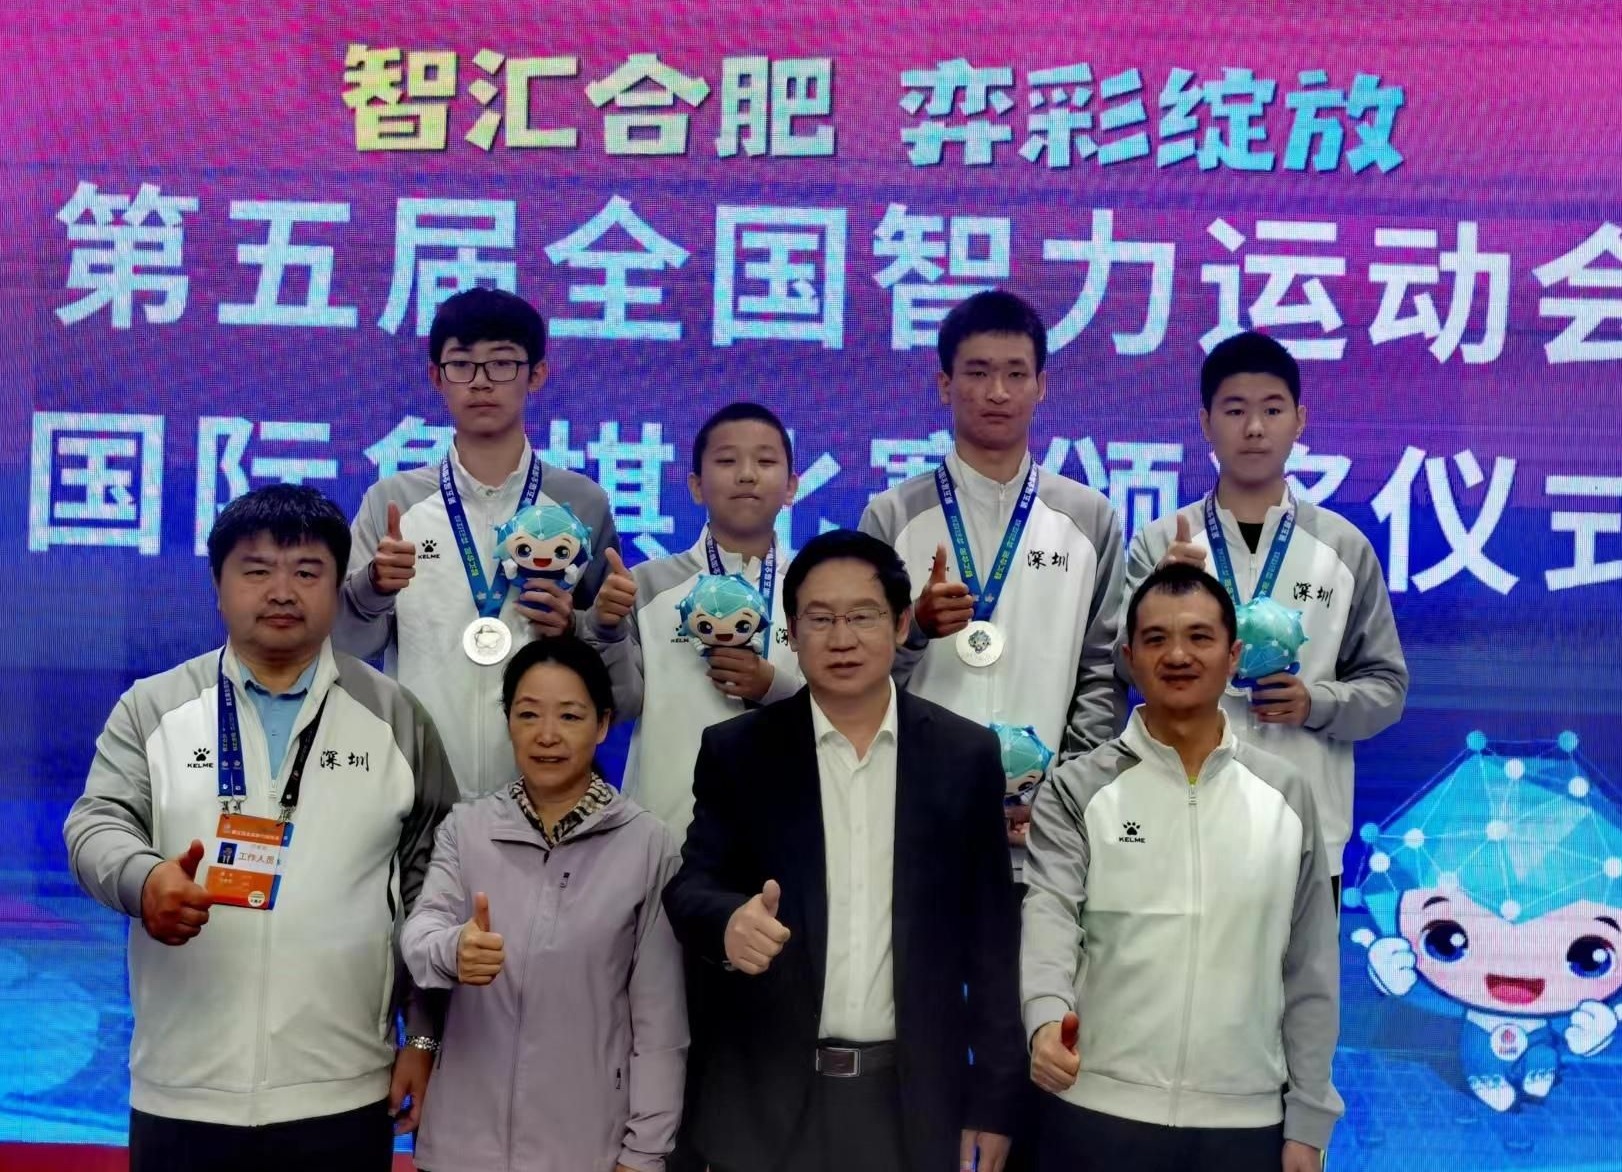 国象少年男团、桥牌青年女团均获亚军  第五届智运会深圳代表团再添两银